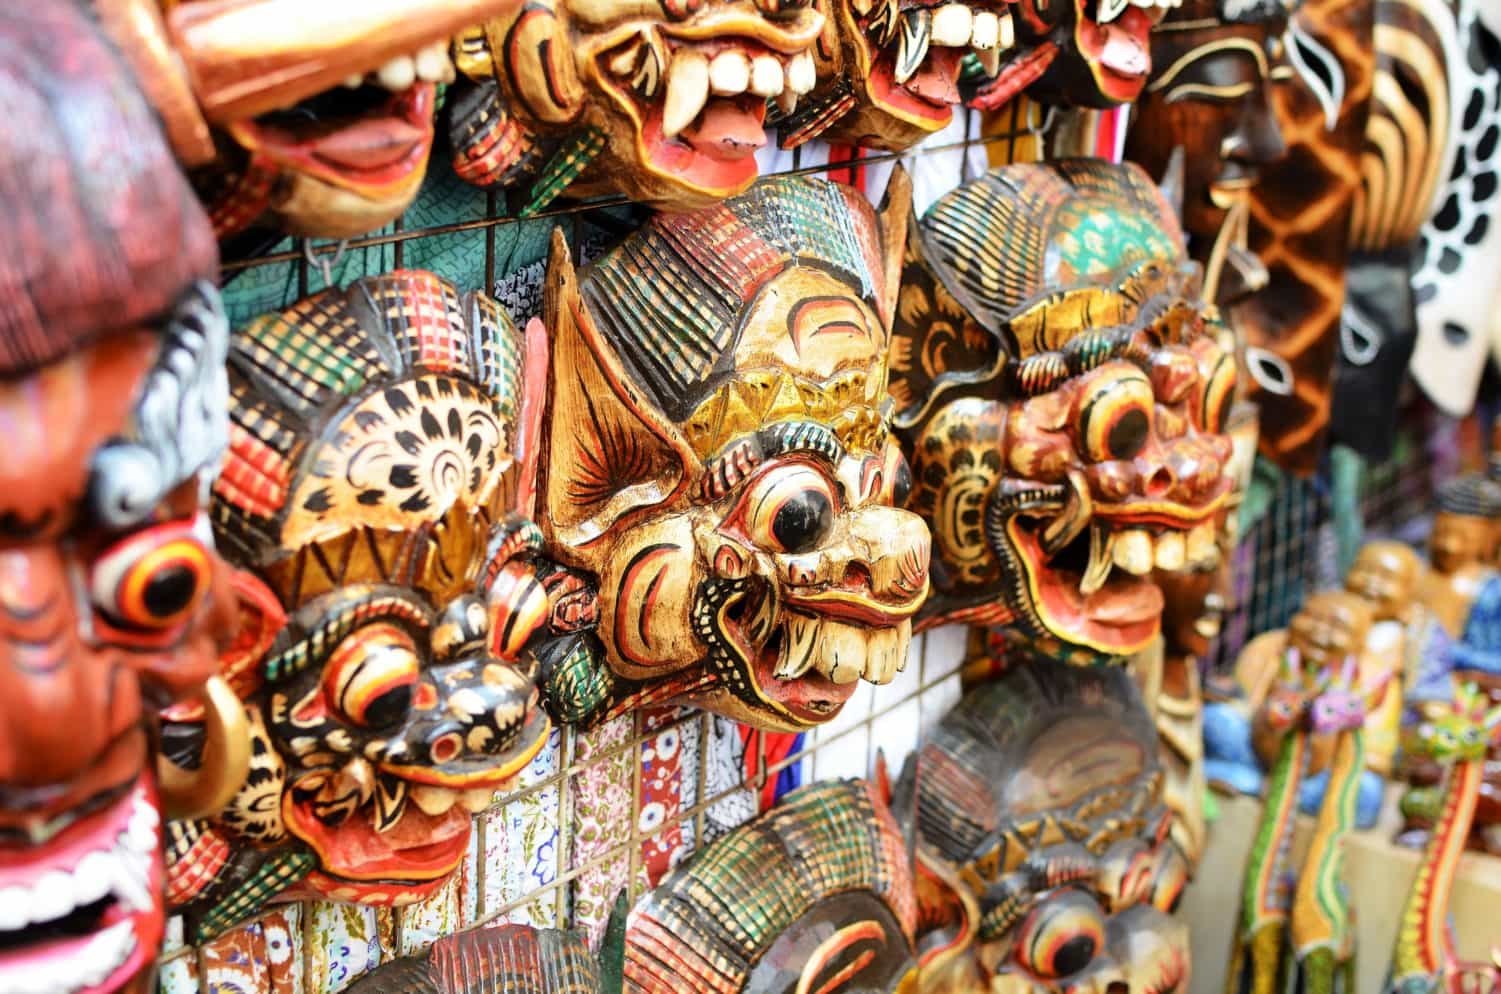 Reise-Guide Bali: Holzmasken sind ein beliebtes Souvenir